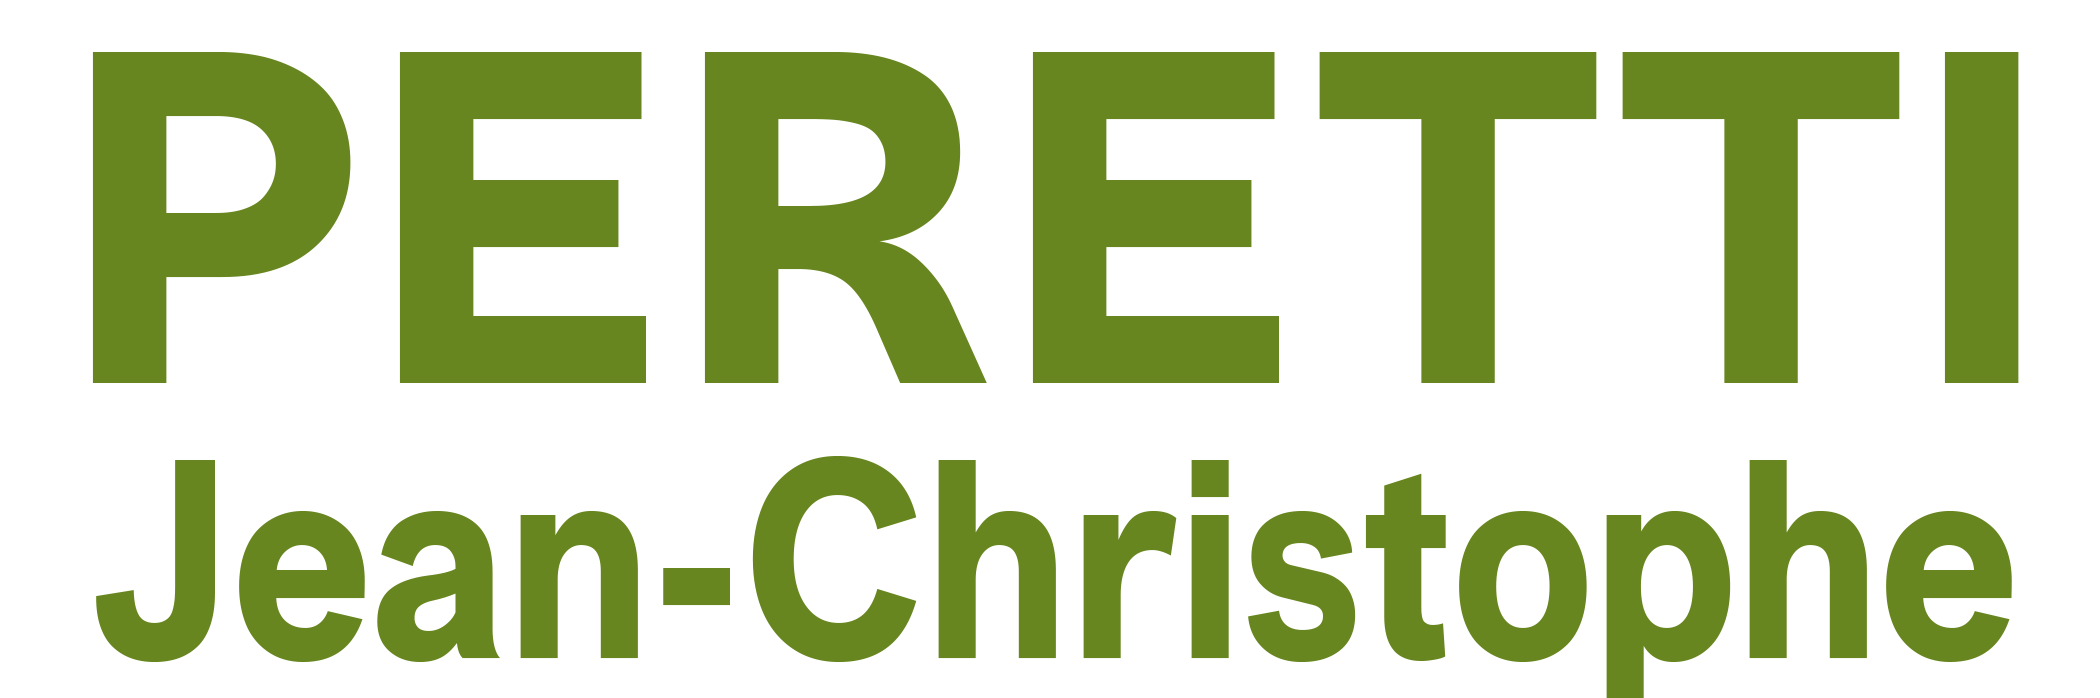 PERETTI JEAN-CHRISTOPHE